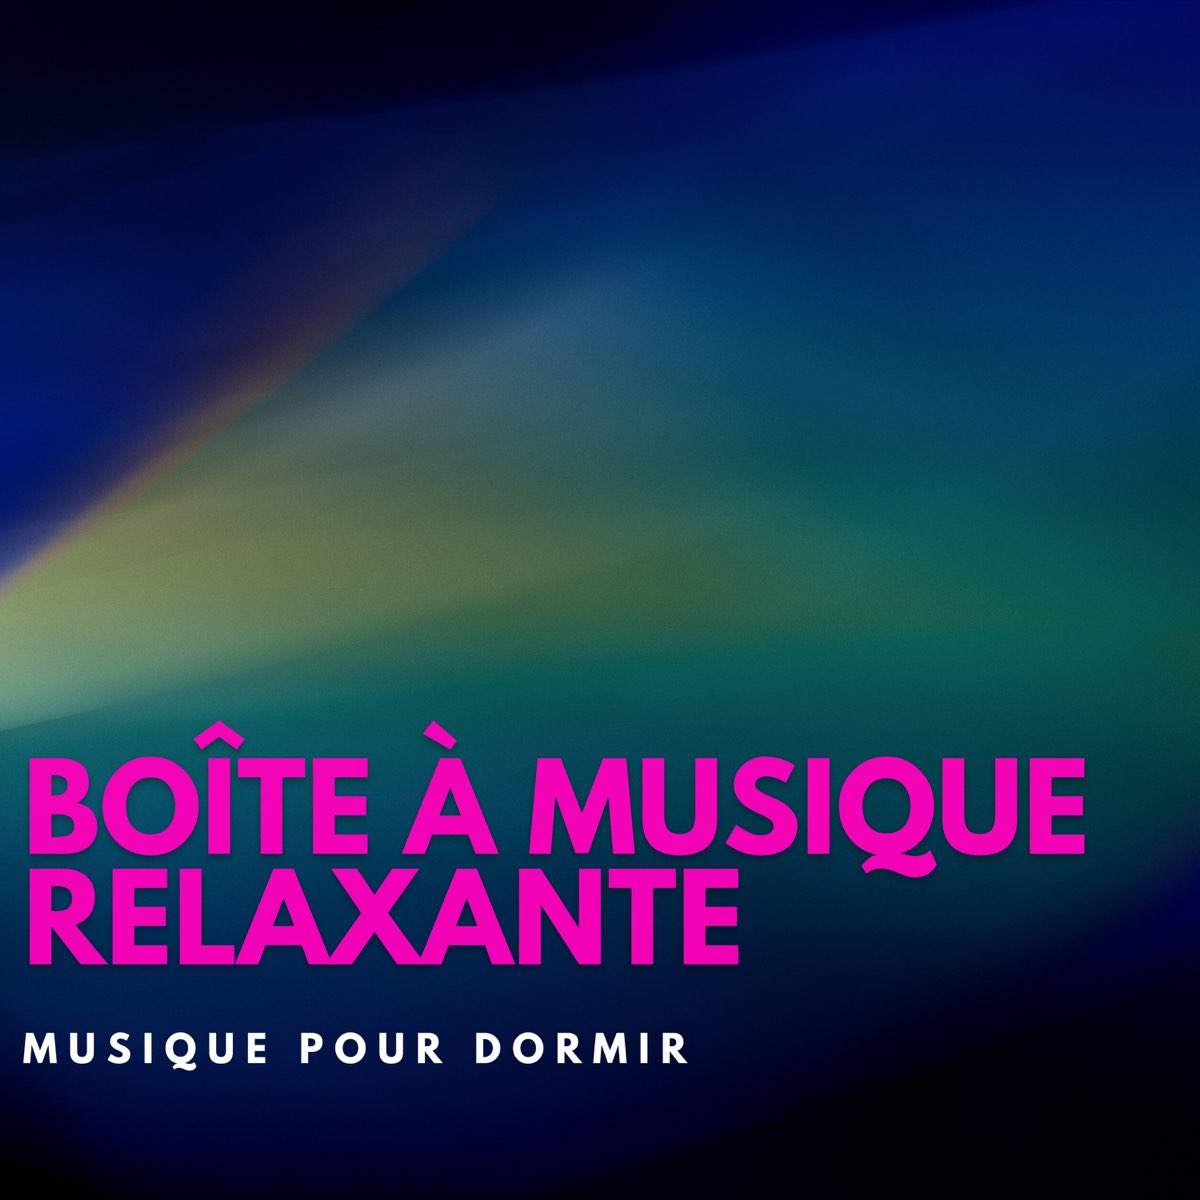 Boîte à musique relaxante - Musique pour dormir - Album by Rosé New Age  Musique - Apple Music